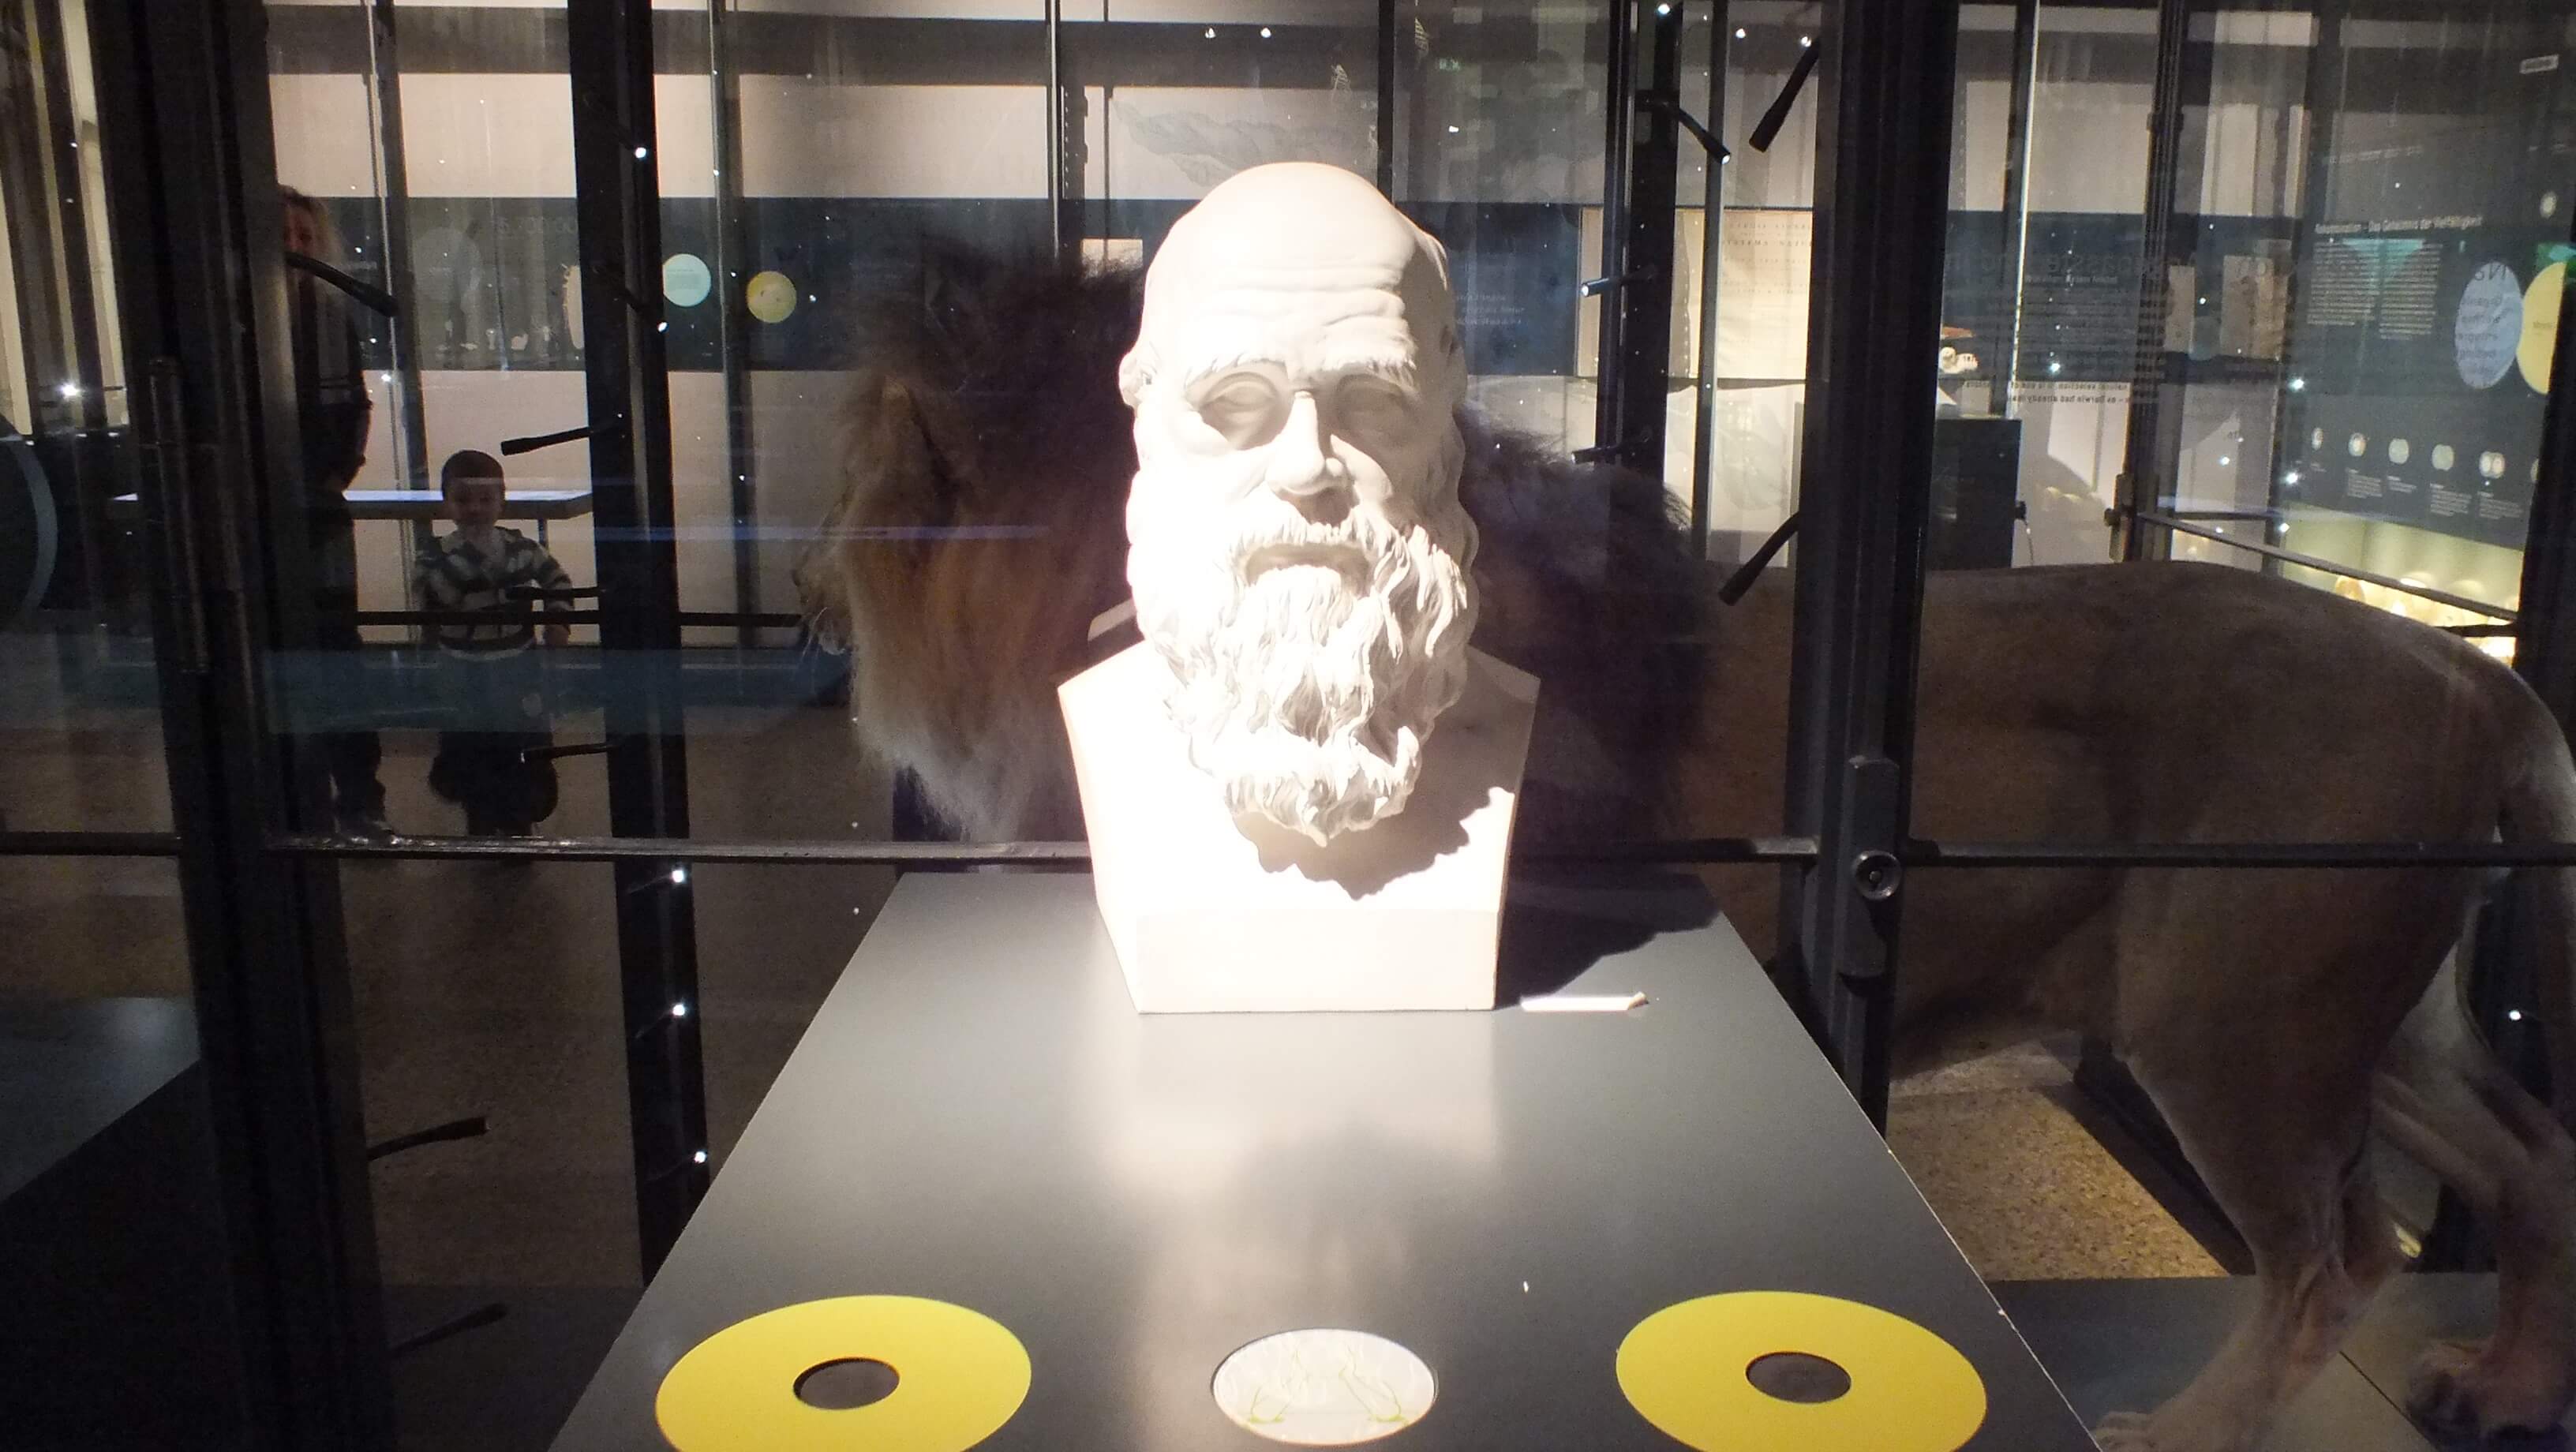 تمثال تشارلز داروين في معرض "التطور في العمل" في متحف التاريخ الطبيعي في برلين. تصوير: آفي بيليزوفسكي، آذار 2013